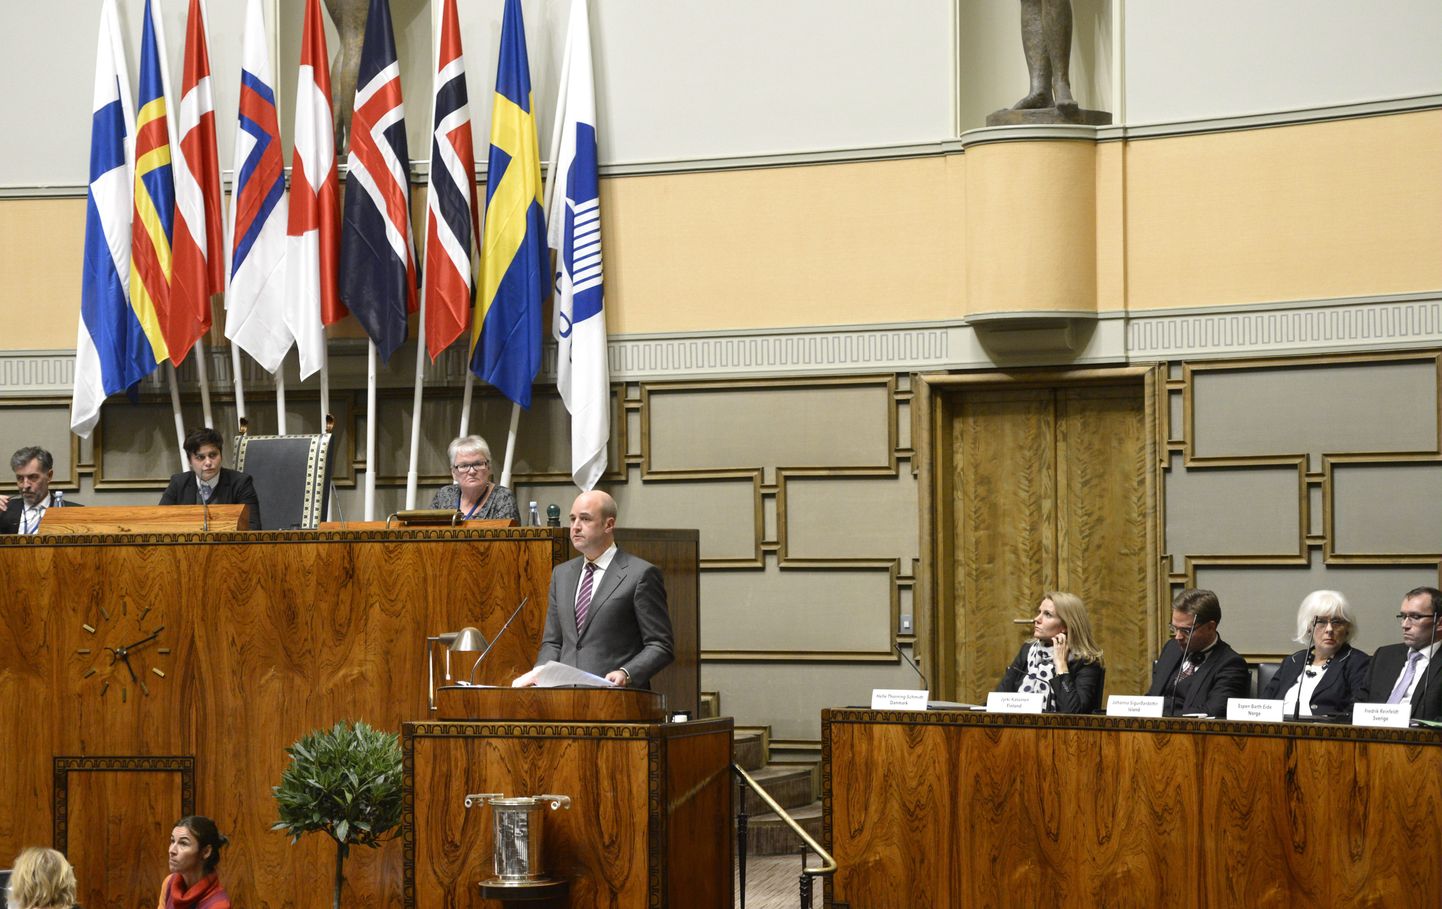 Soome parlamendi istungitesaalis 2012. aastal tehtud fotol on Põhjamaade Nõukogusse koonduva viie riigi ja kolme autonoomse piirkonna lipud ning lisaks Nordeni kui organisatsiooni lipp (paremal). Kõnepuldis on Rootsi tollane peaminister Fredrik Reinfeldt.